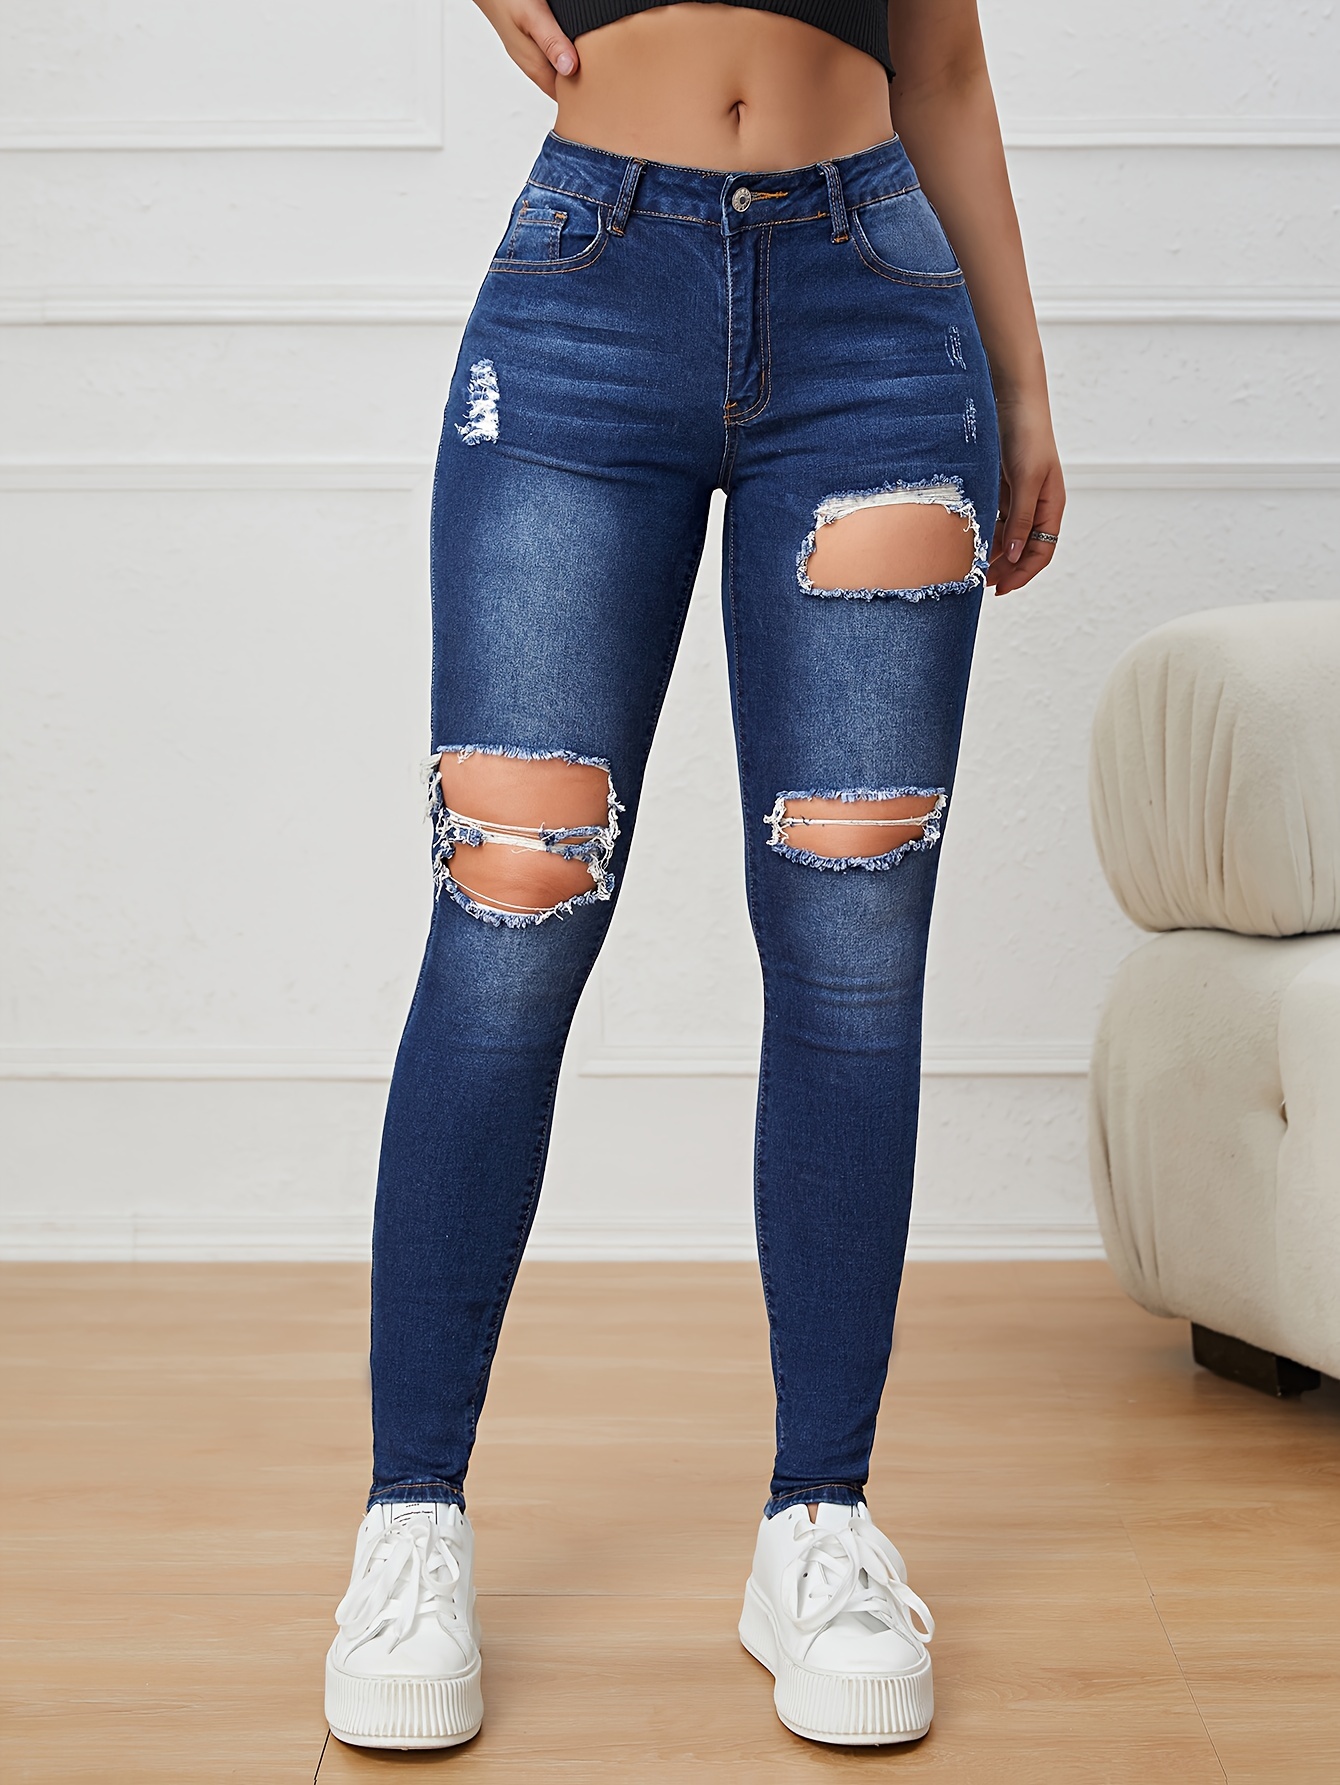 Jeans ajustados de tiro alto rasgados, pantalones de mezclilla con curvas  desgastados sexys elásticos * lavados claros, jeans y ropa de mezclilla